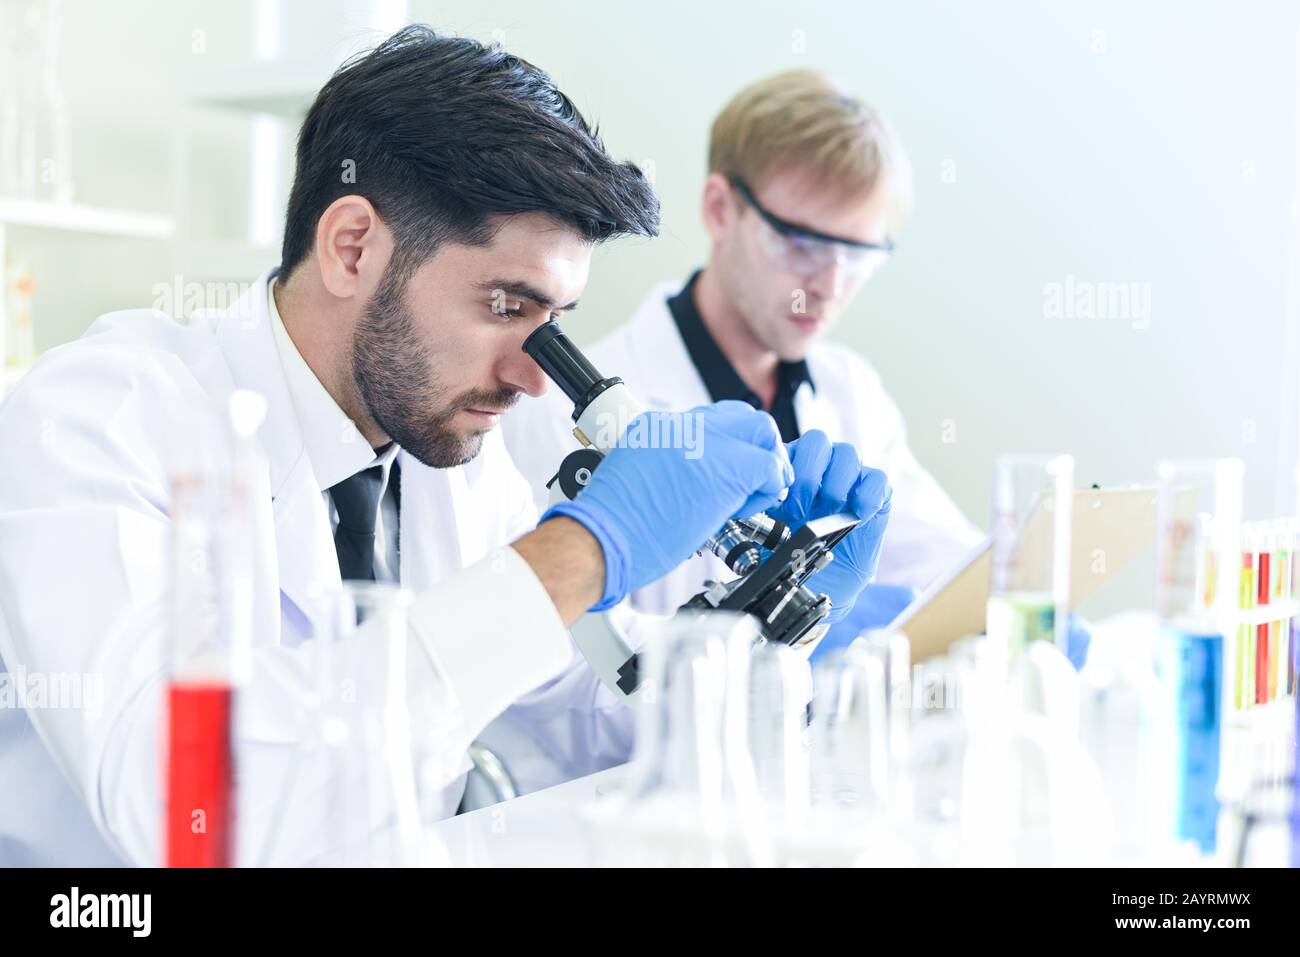 Team di ricerca scientifica lavorando insieme condurre esperimenti e guarda al microscopio in moderno laboratorio / Scienziati in laboratorio biochimica genetica Foto Stock